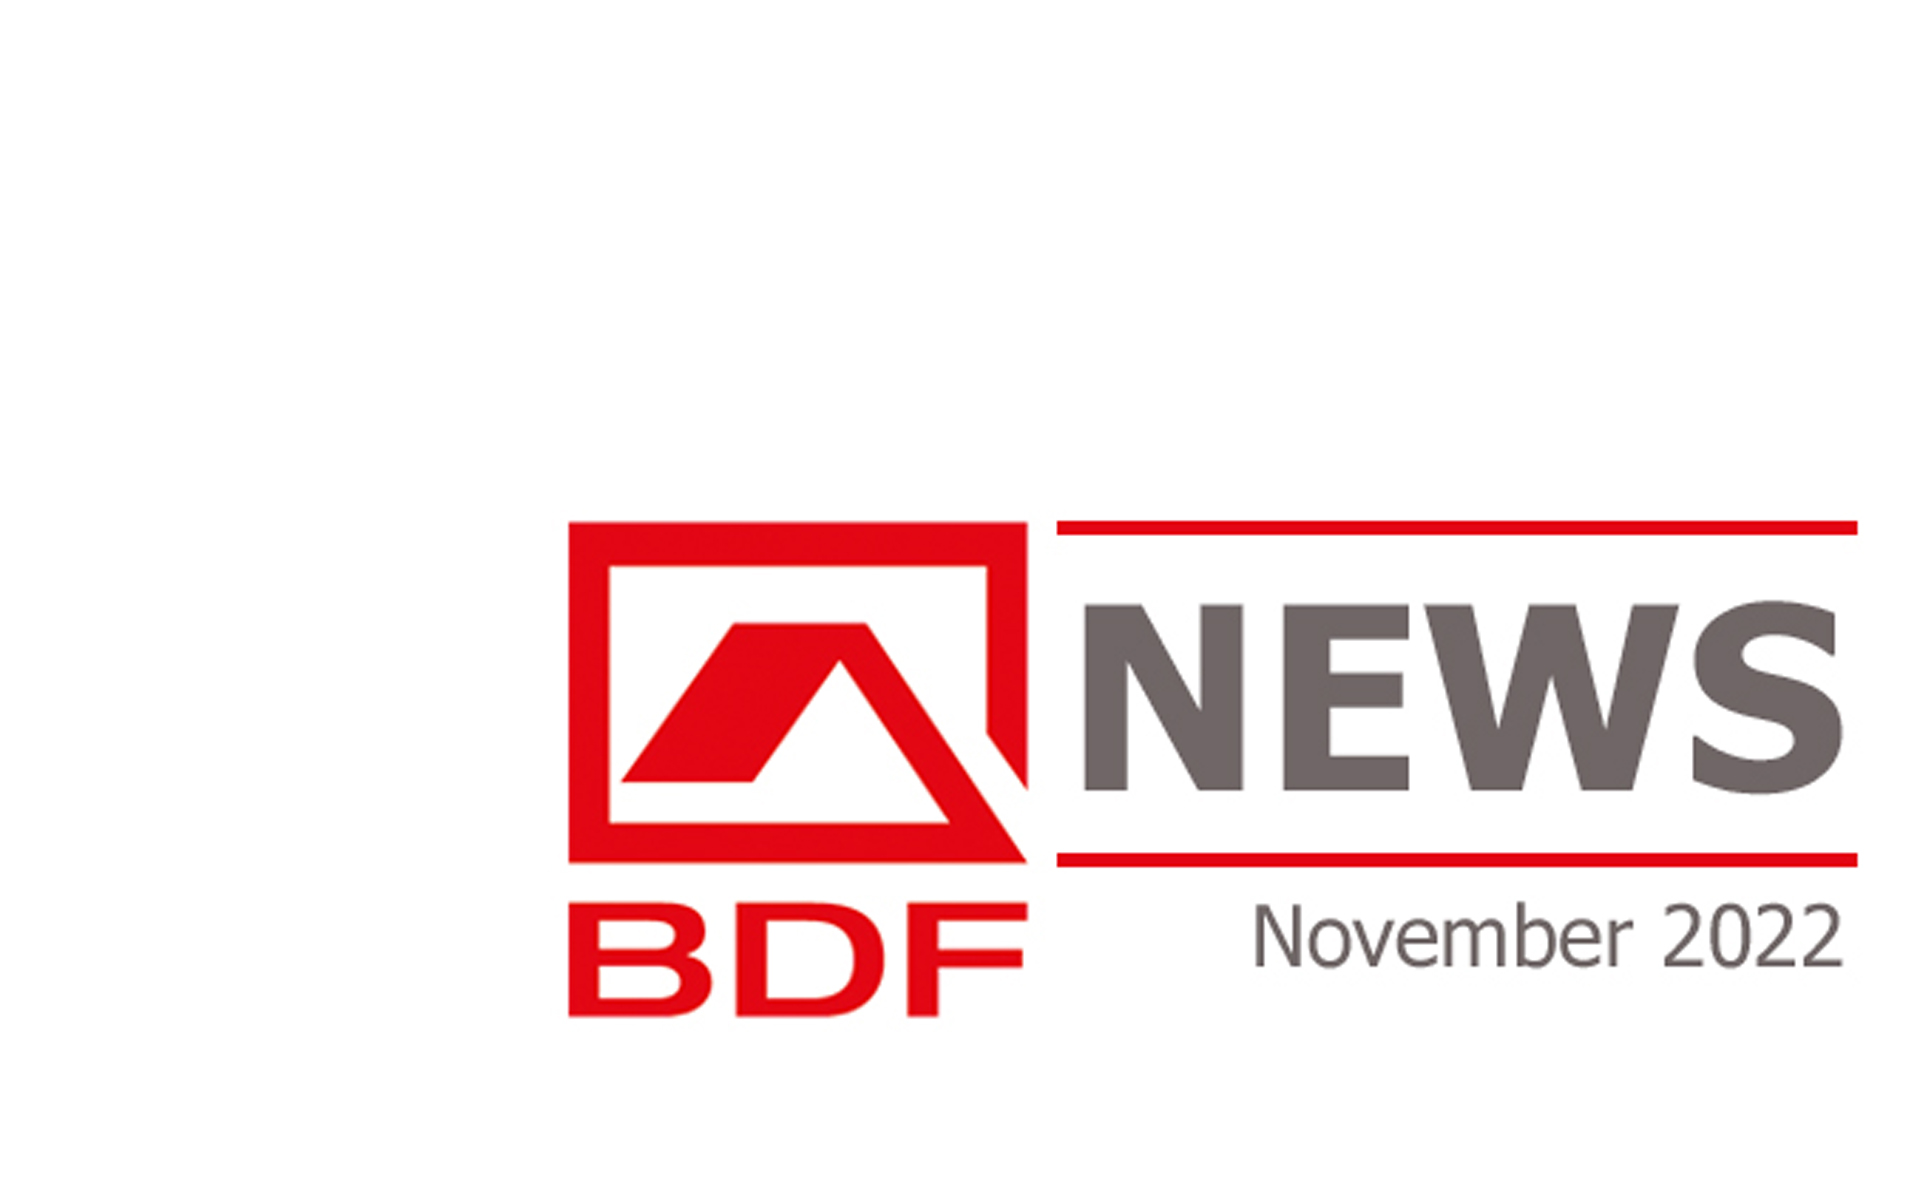 BDF NEWS November 2022